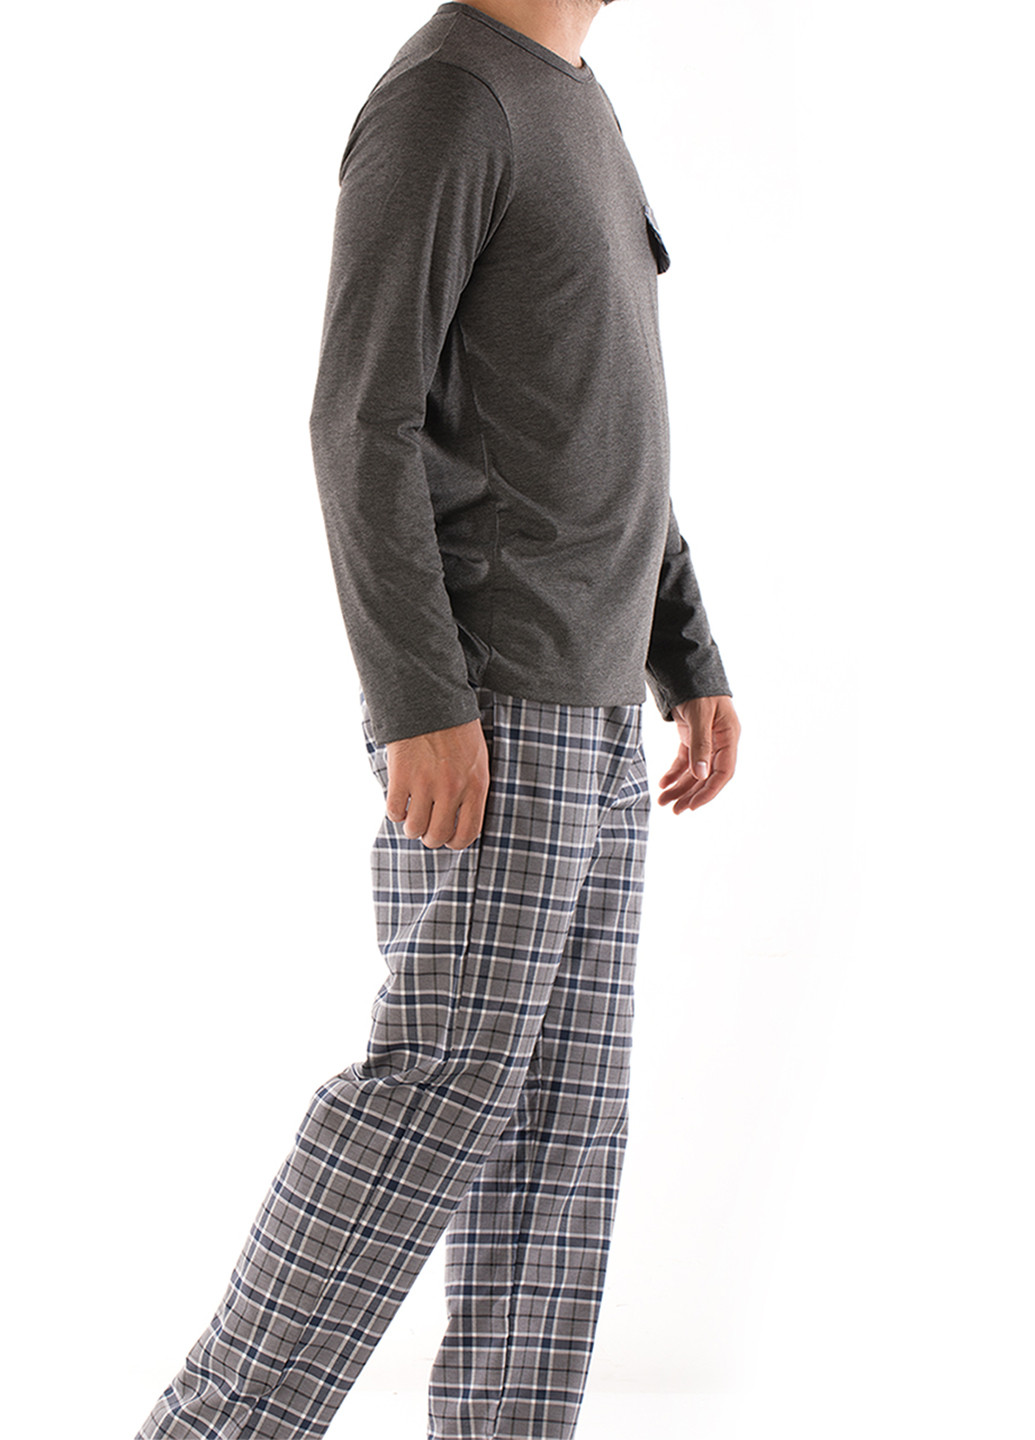 Пижама (лонгслив, брюки) DoReMi лонгслив + брюки клетка графитовая домашняя полиэстер, хлопок